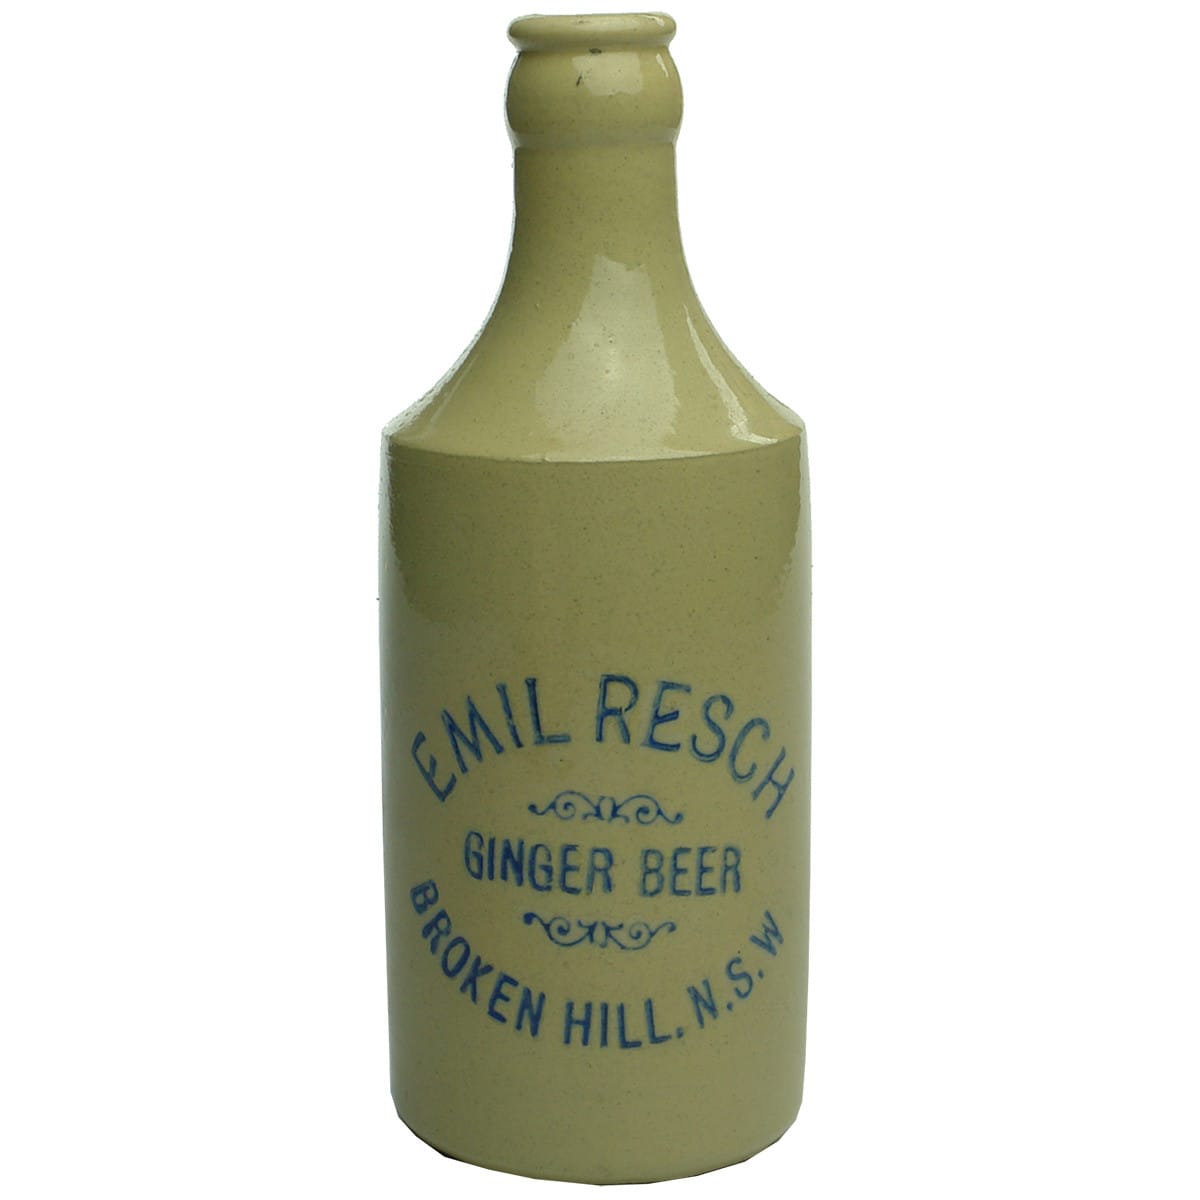 Ginger Beer. Emil Resch, Broken Hill. Crown seal, dump. Blue print.